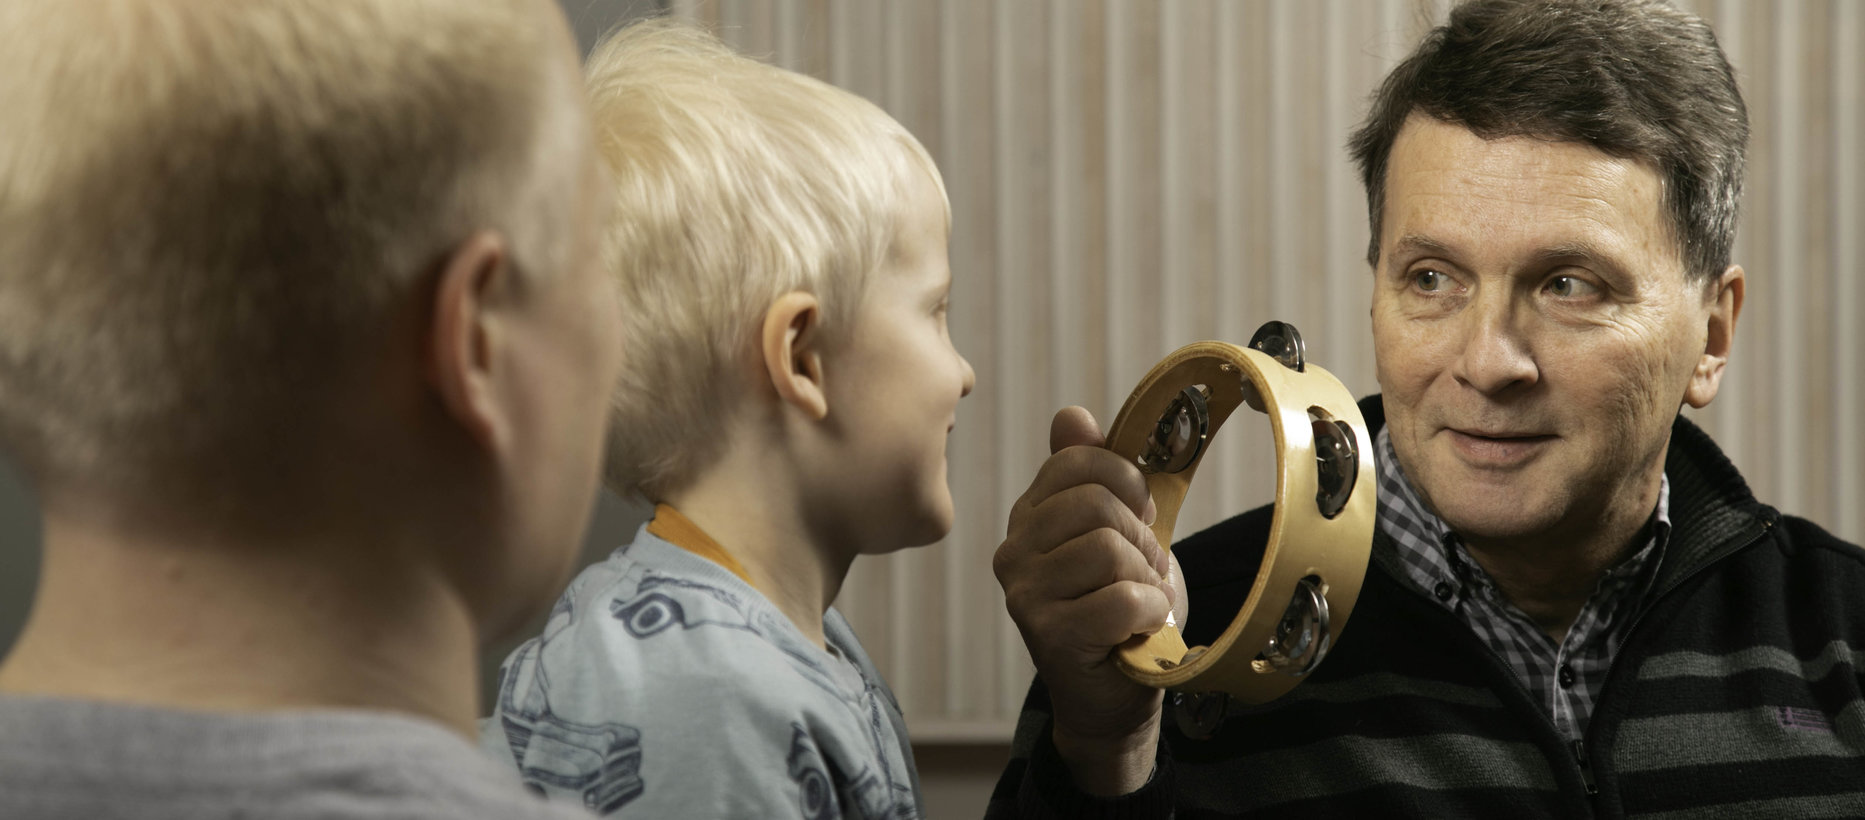 Lapsi ja kaksi aikuista soittavat tamburiinia.